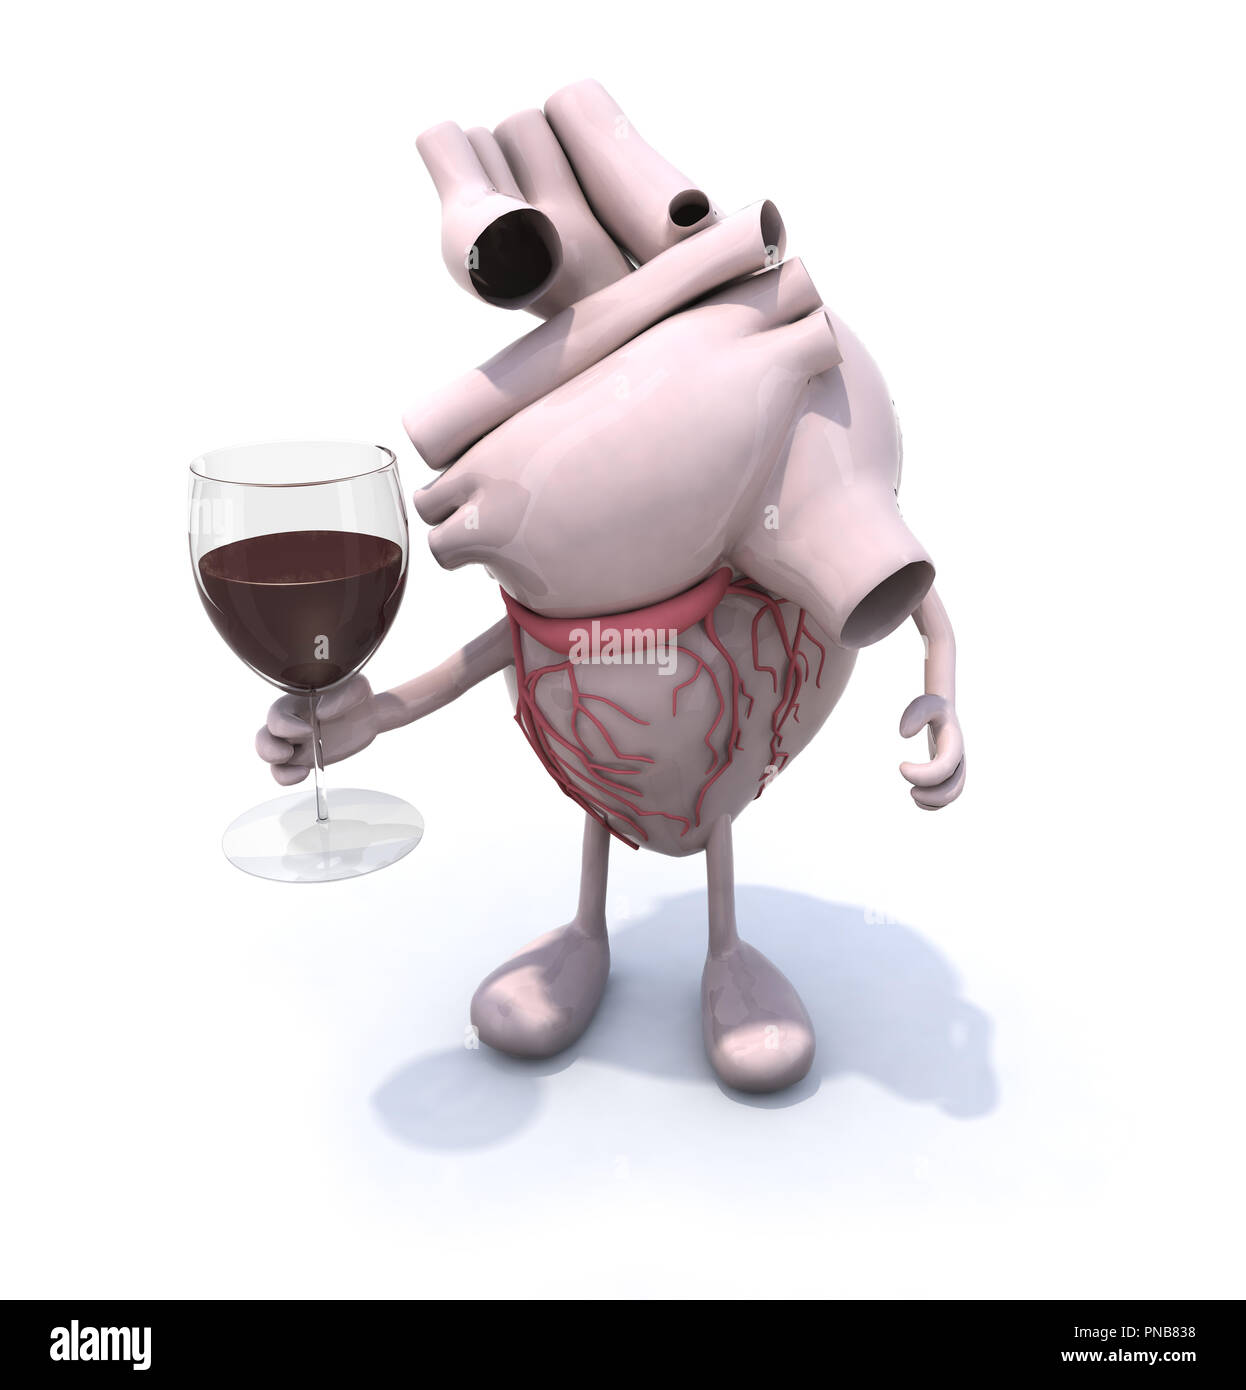 Rotwein und Resveratrol: gut fürs Herz! Stockfotografie - Alamy